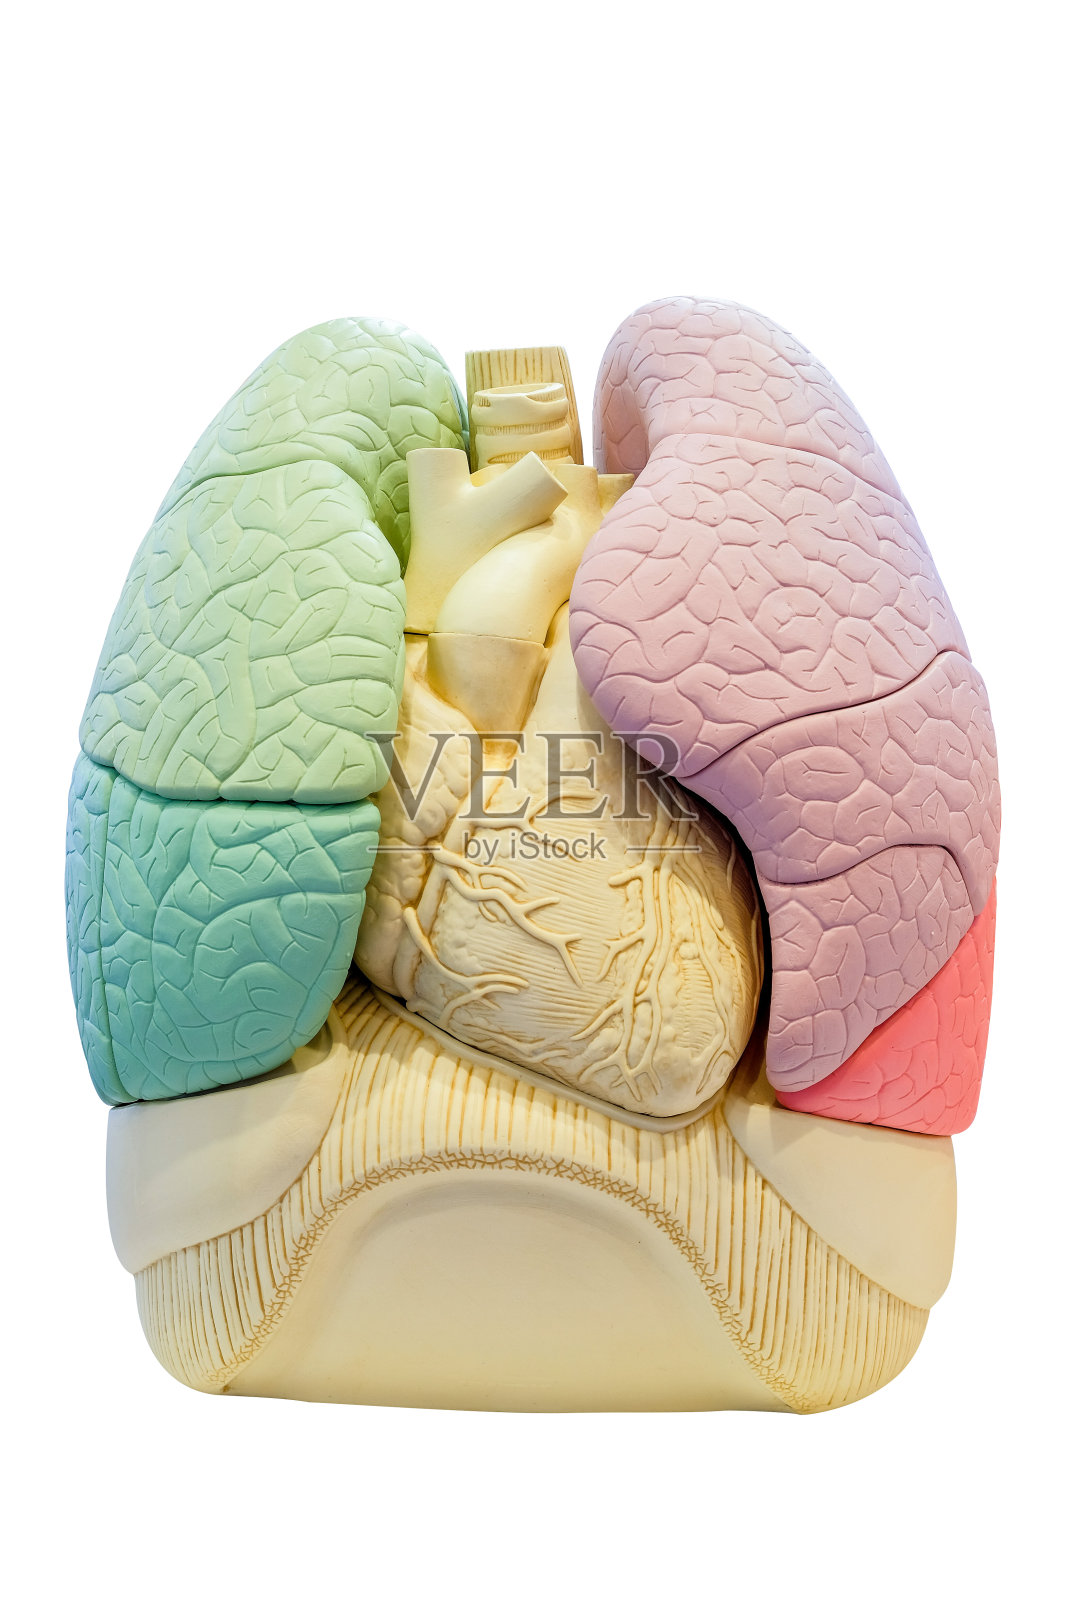 人体解剖节段肺模型照片摄影图片